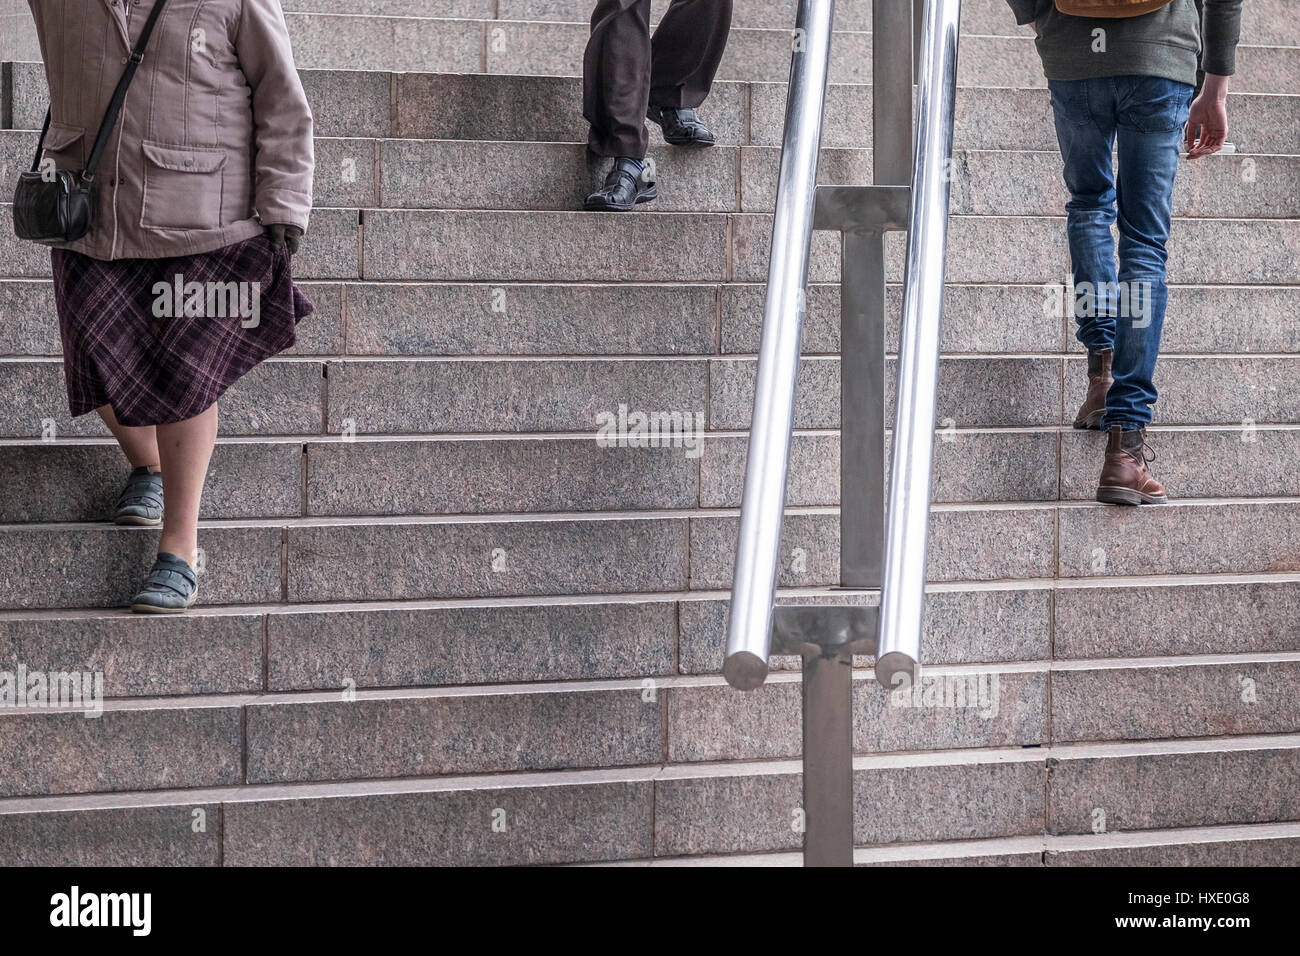 Menschen, die Treppen steigen, Füße, Beine, Handlauf Stockfoto